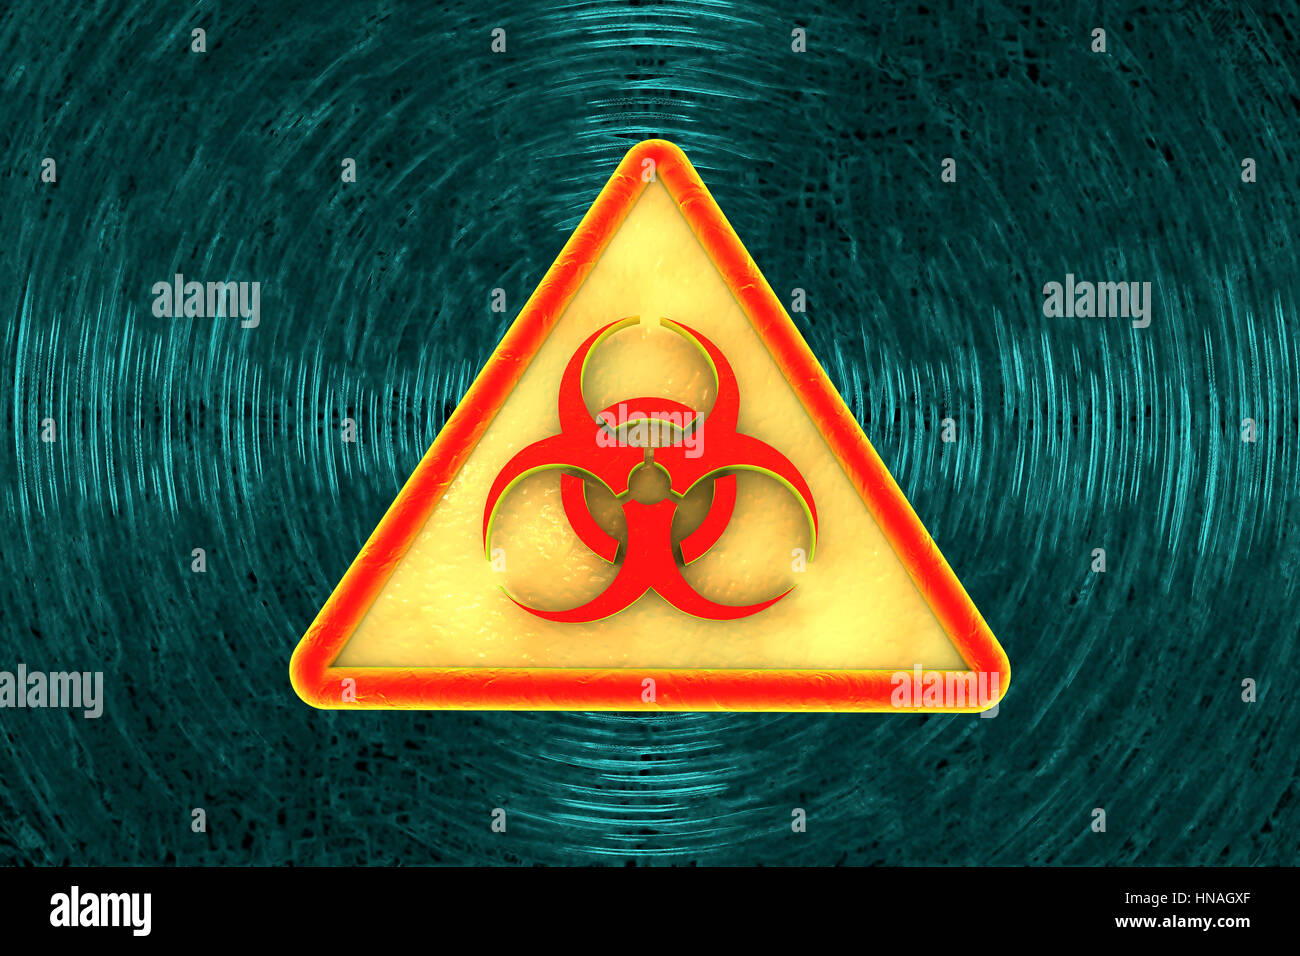 Biohazard sign, illustration Stock Photo